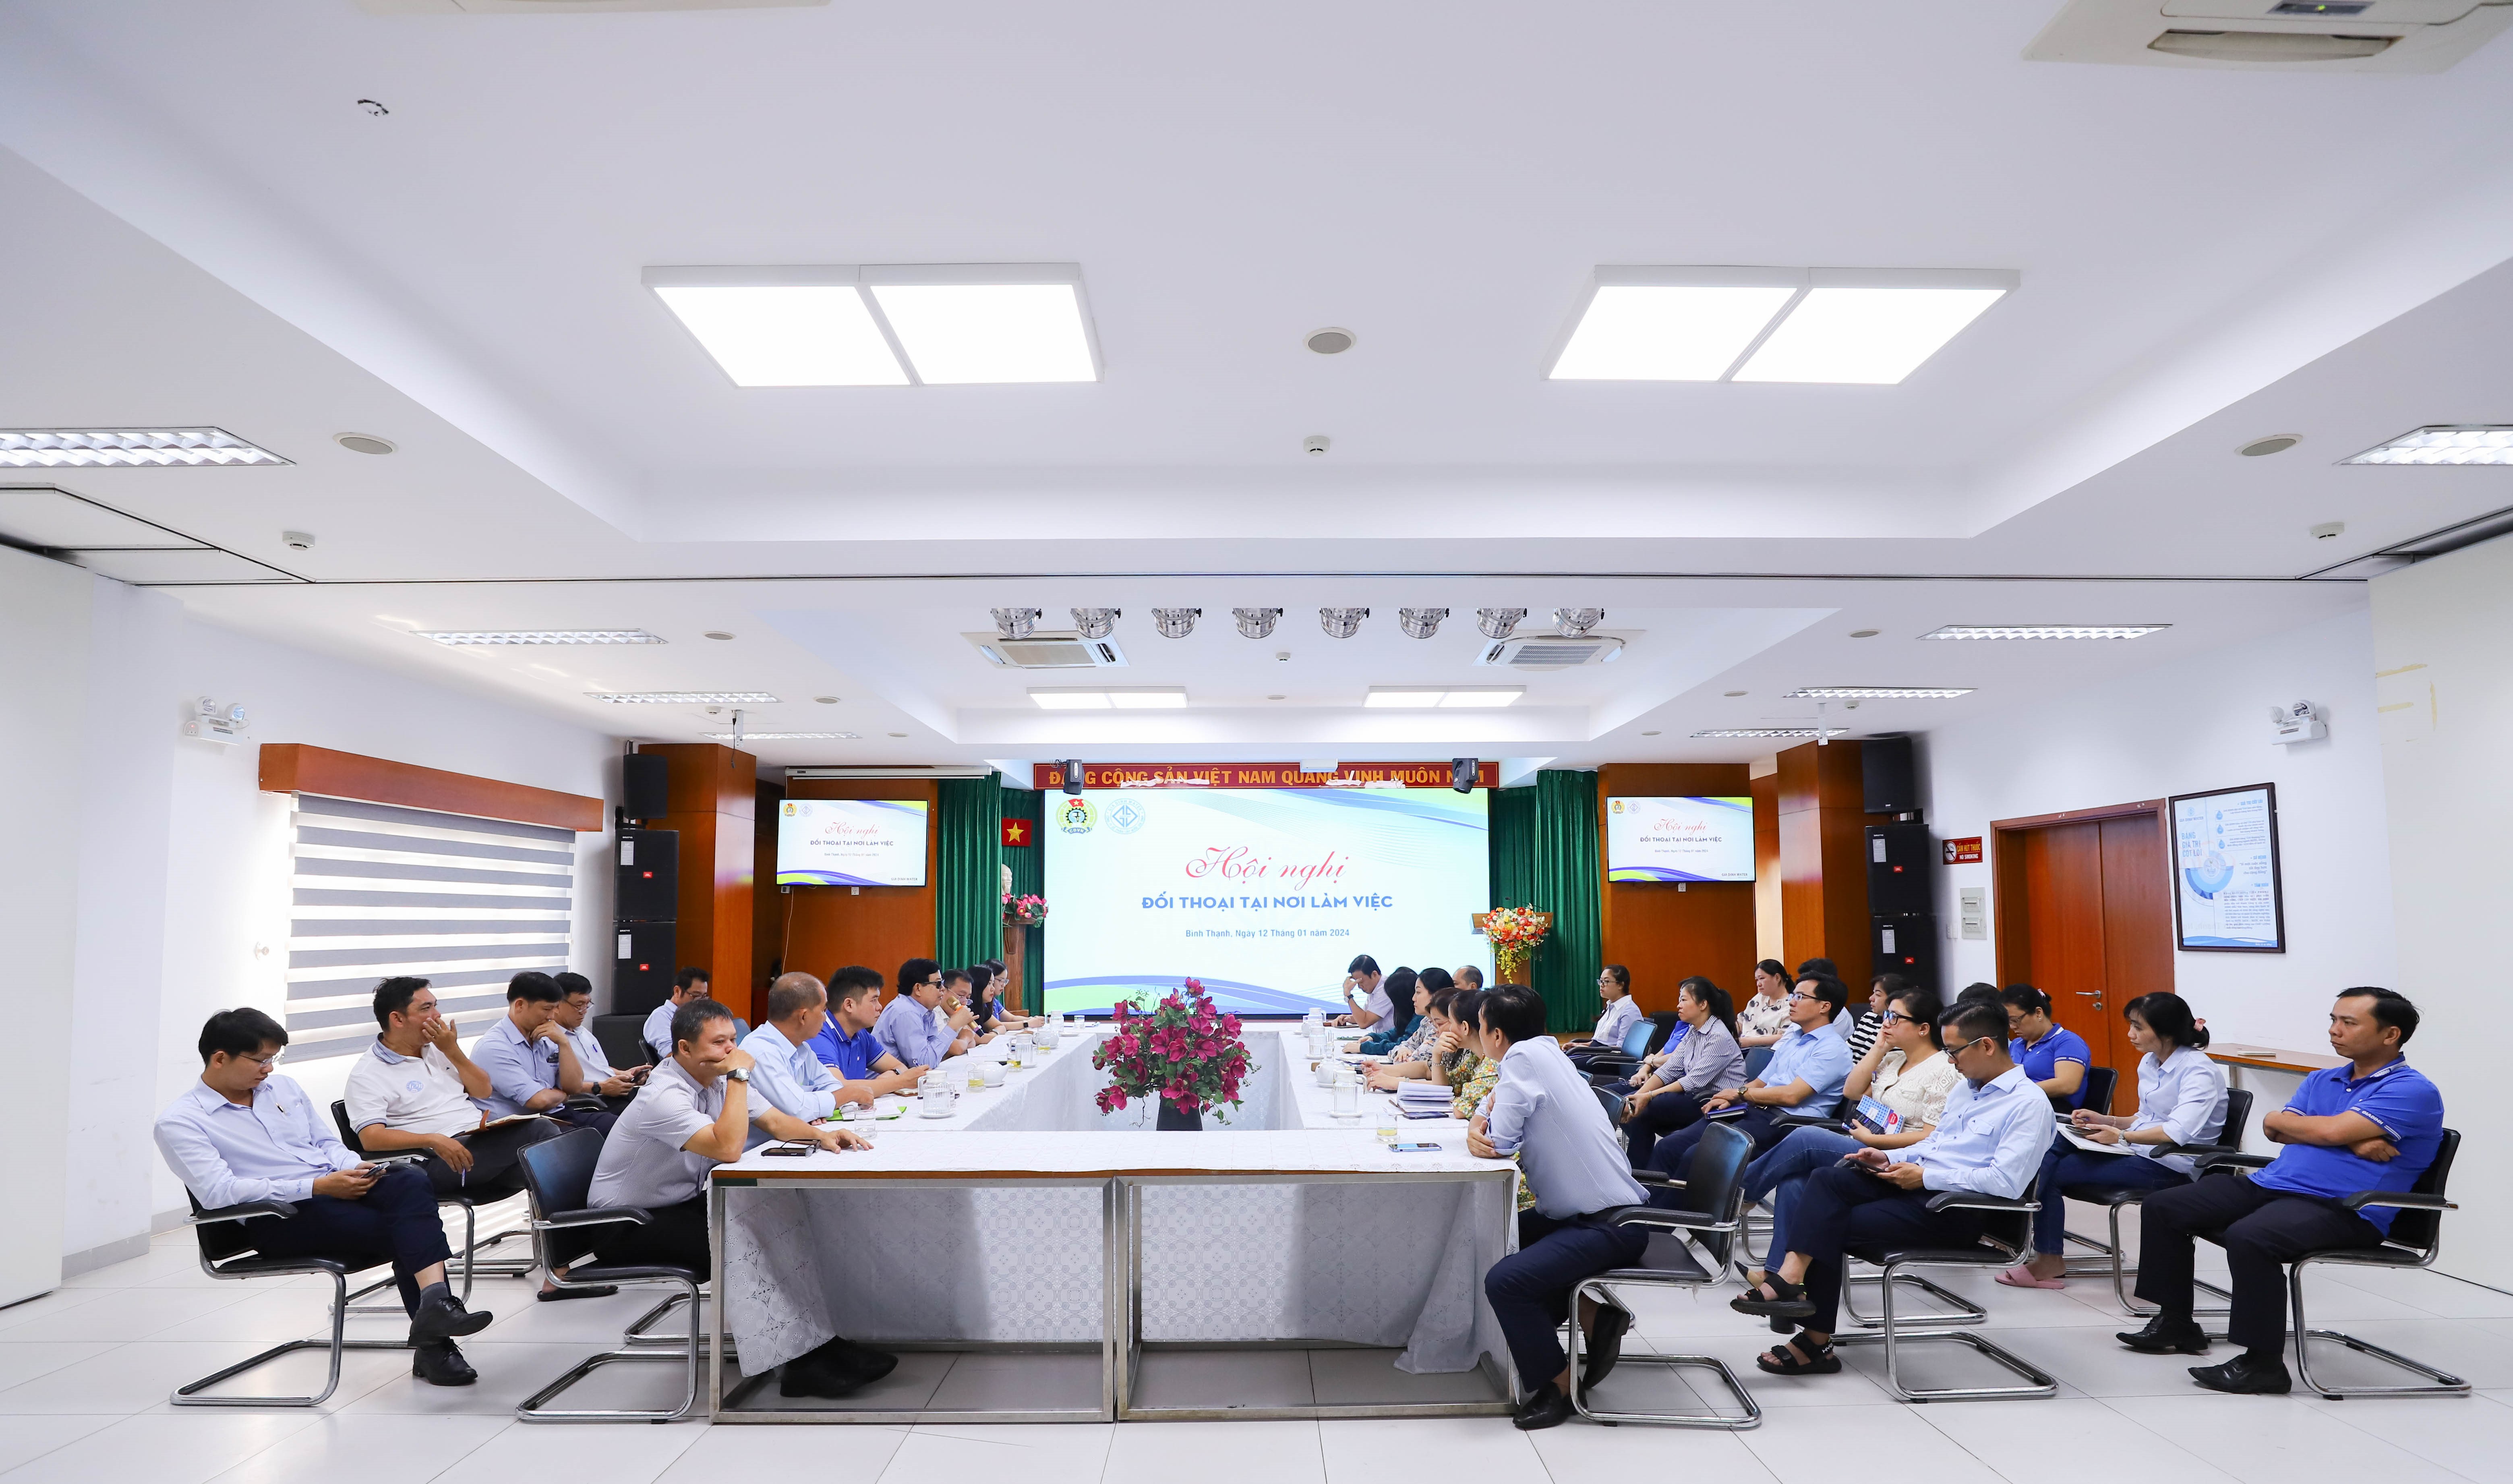 Hội nghị đối thoại tại nơi làm việc - Công ty CPCN Gia Định